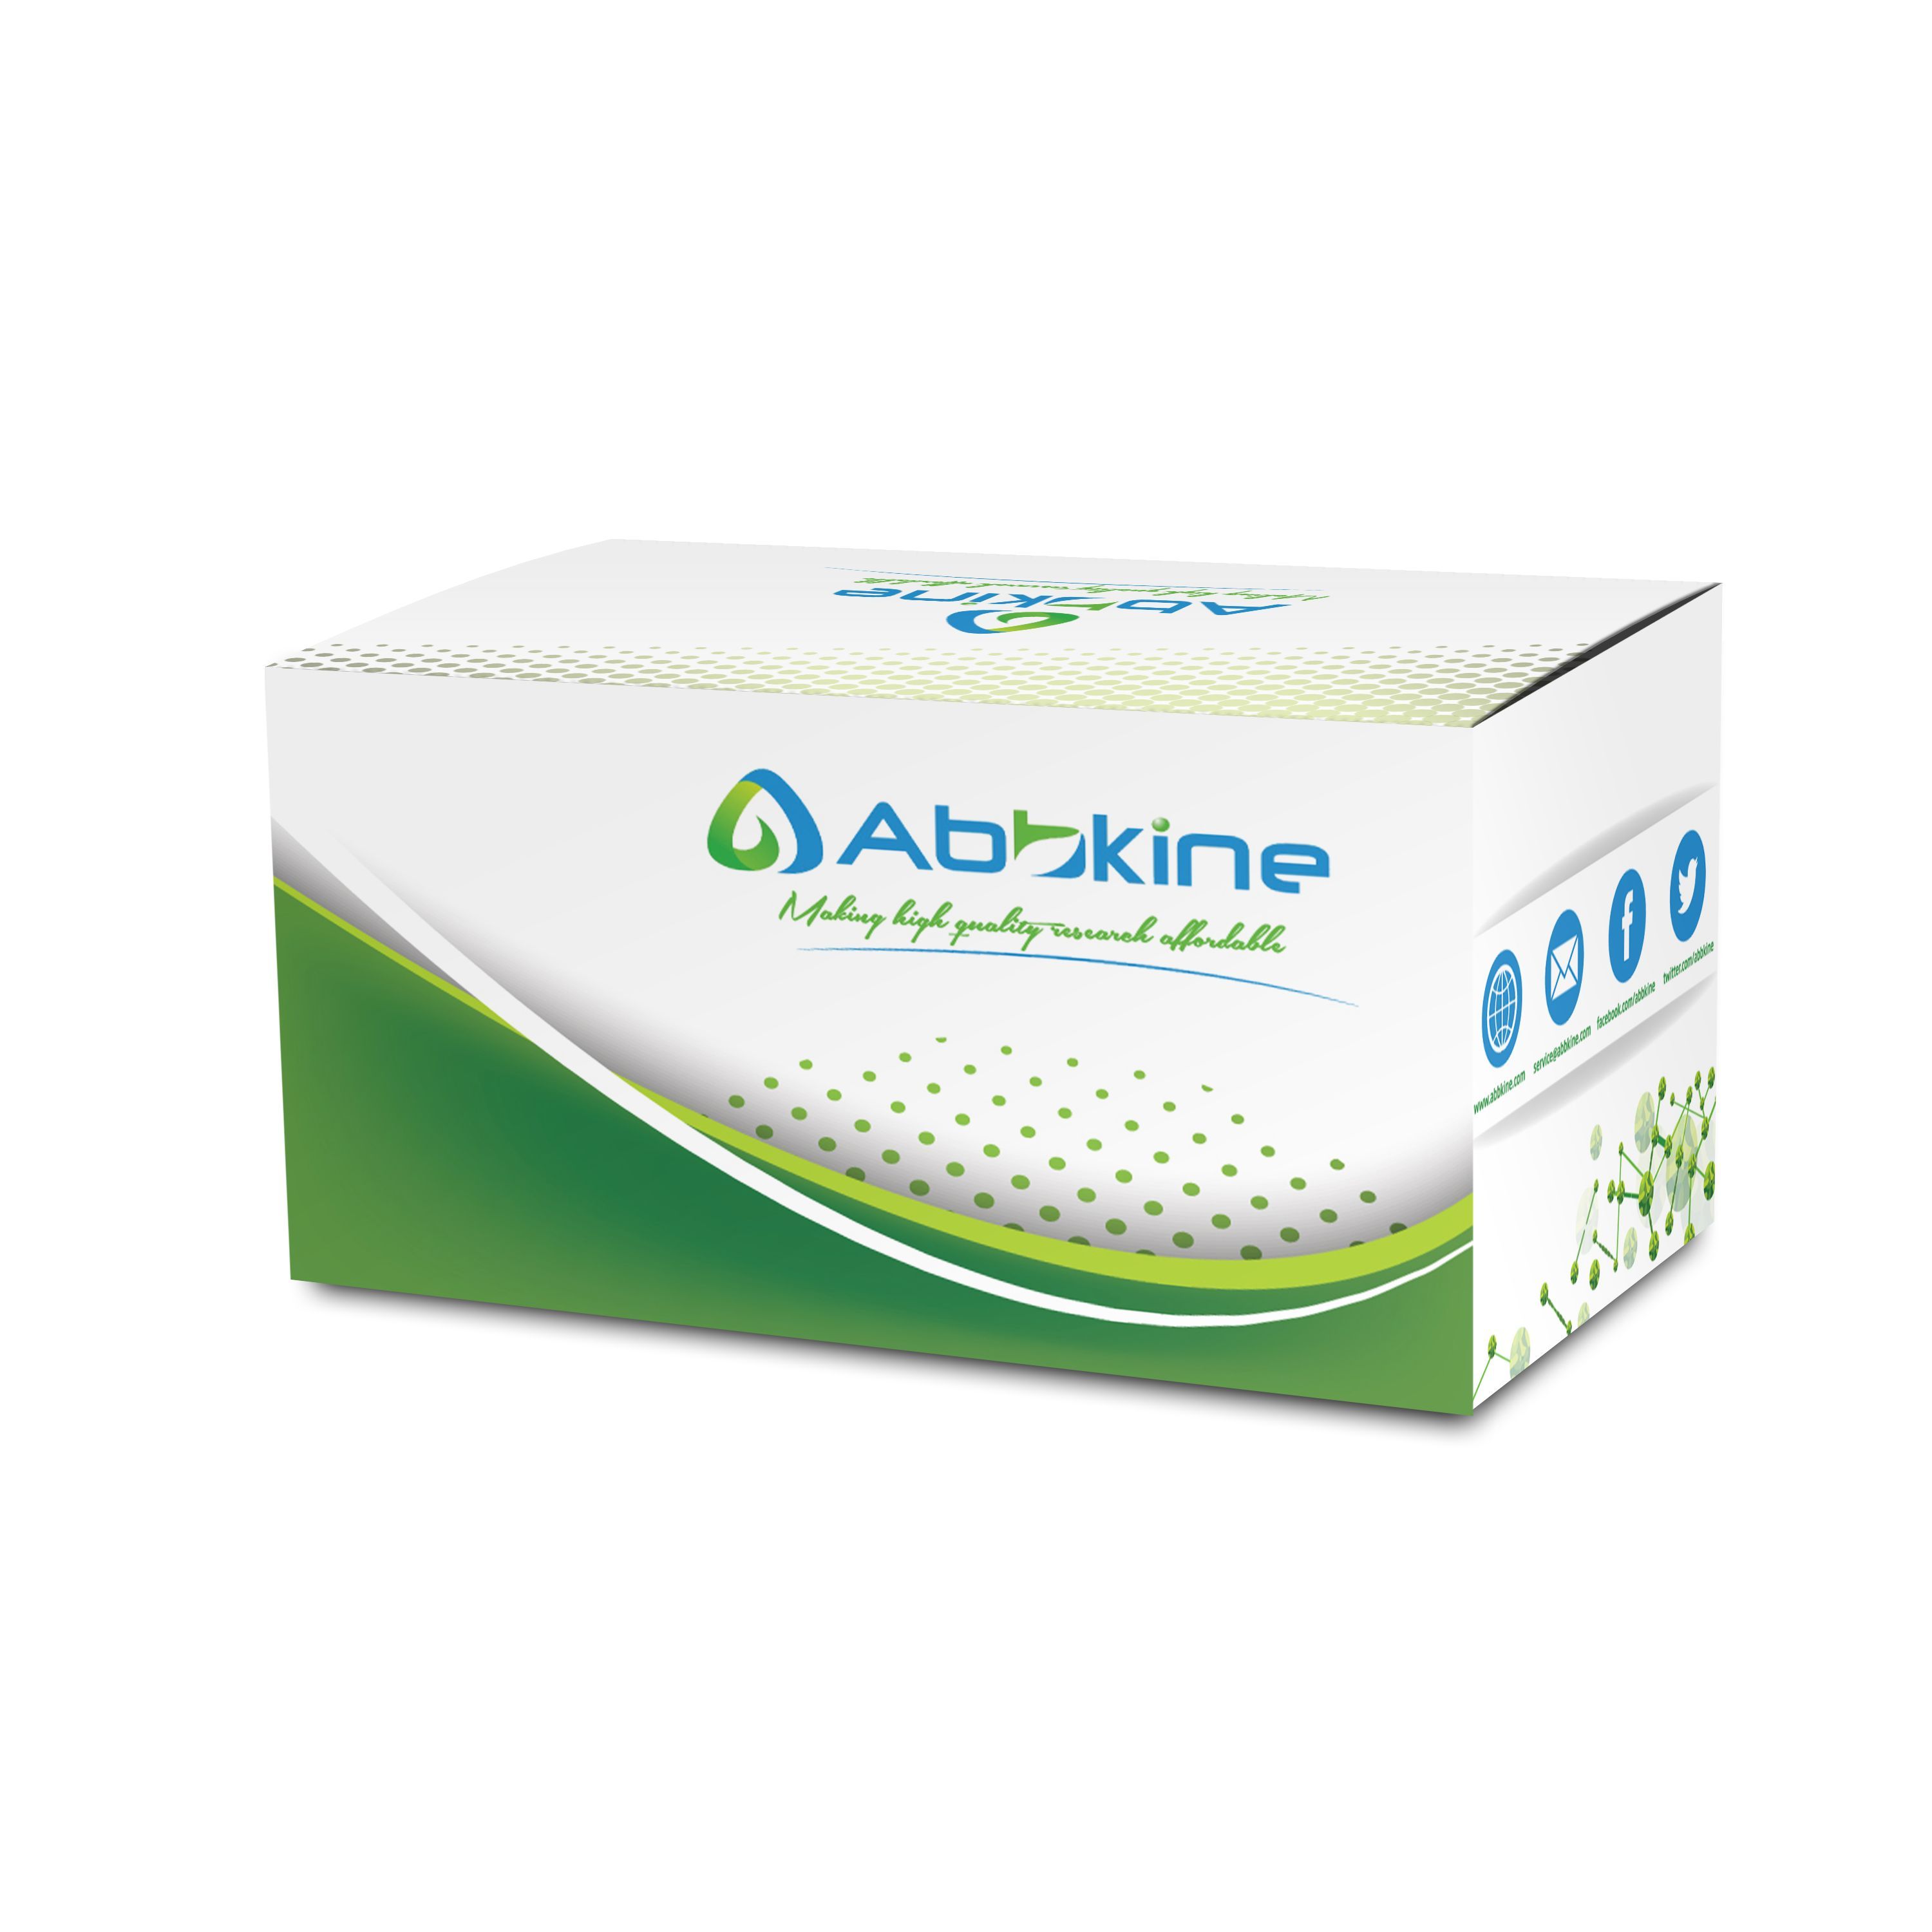 ExKine™ Pro动物细胞/组织总蛋白提取试剂盒（柱式法）/ExKine™ Pro动物细胞/组织总蛋白提取试剂盒（柱式法）